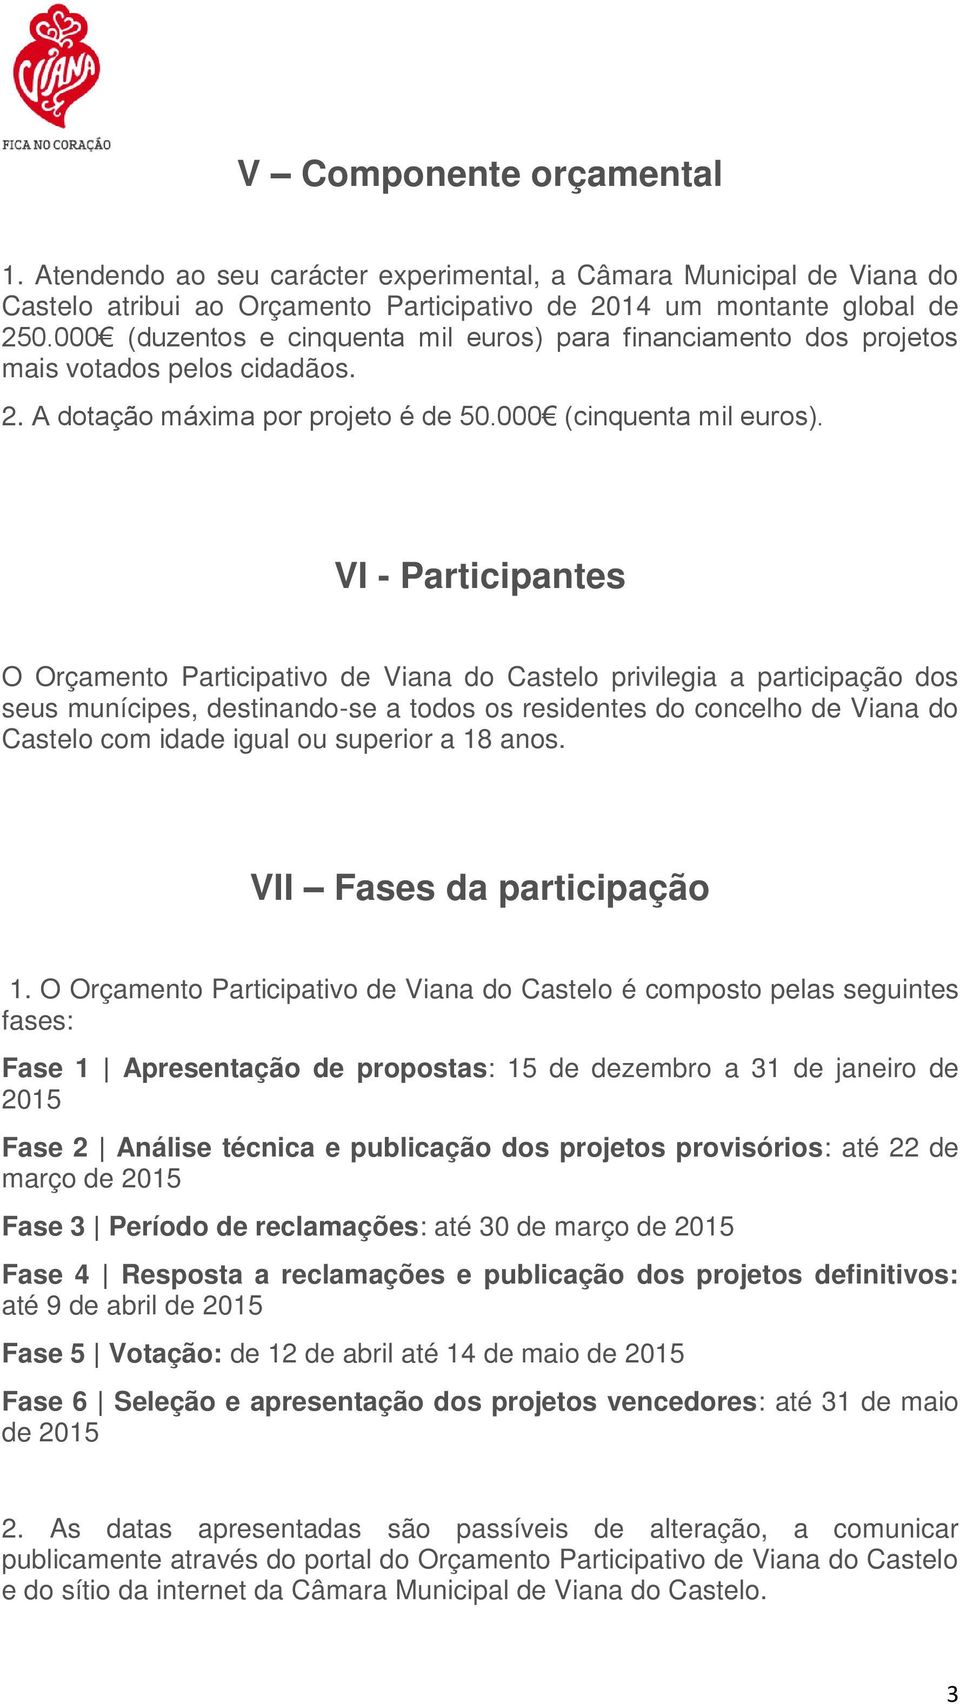 VI - Participantes O Orçamento Participativo de Viana do Castelo privilegia a participação dos seus munícipes, destinando-se a todos os residentes do concelho de Viana do Castelo com idade igual ou